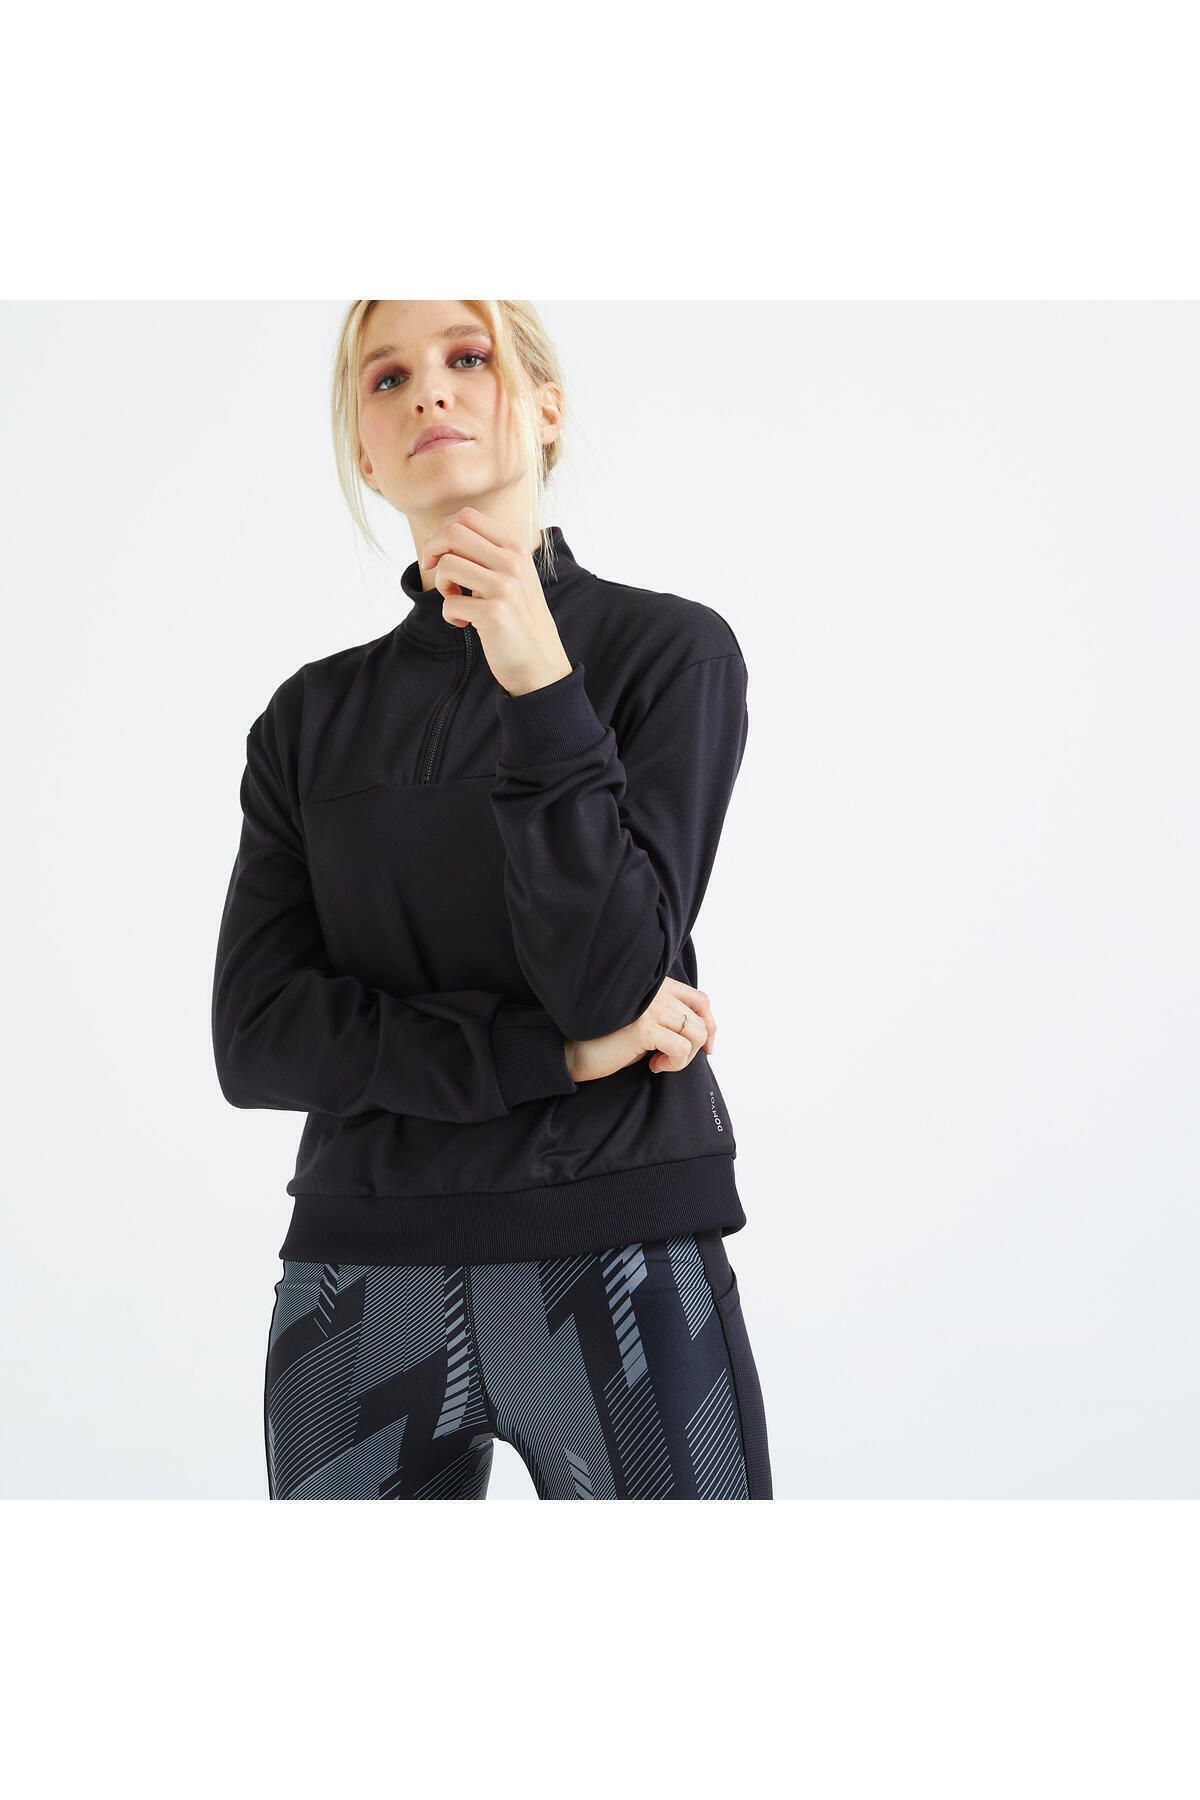 Decathlon Domyos Kadın Siyah Yarım Fermuar Sweatshirt 120 - Fitness Karidyo